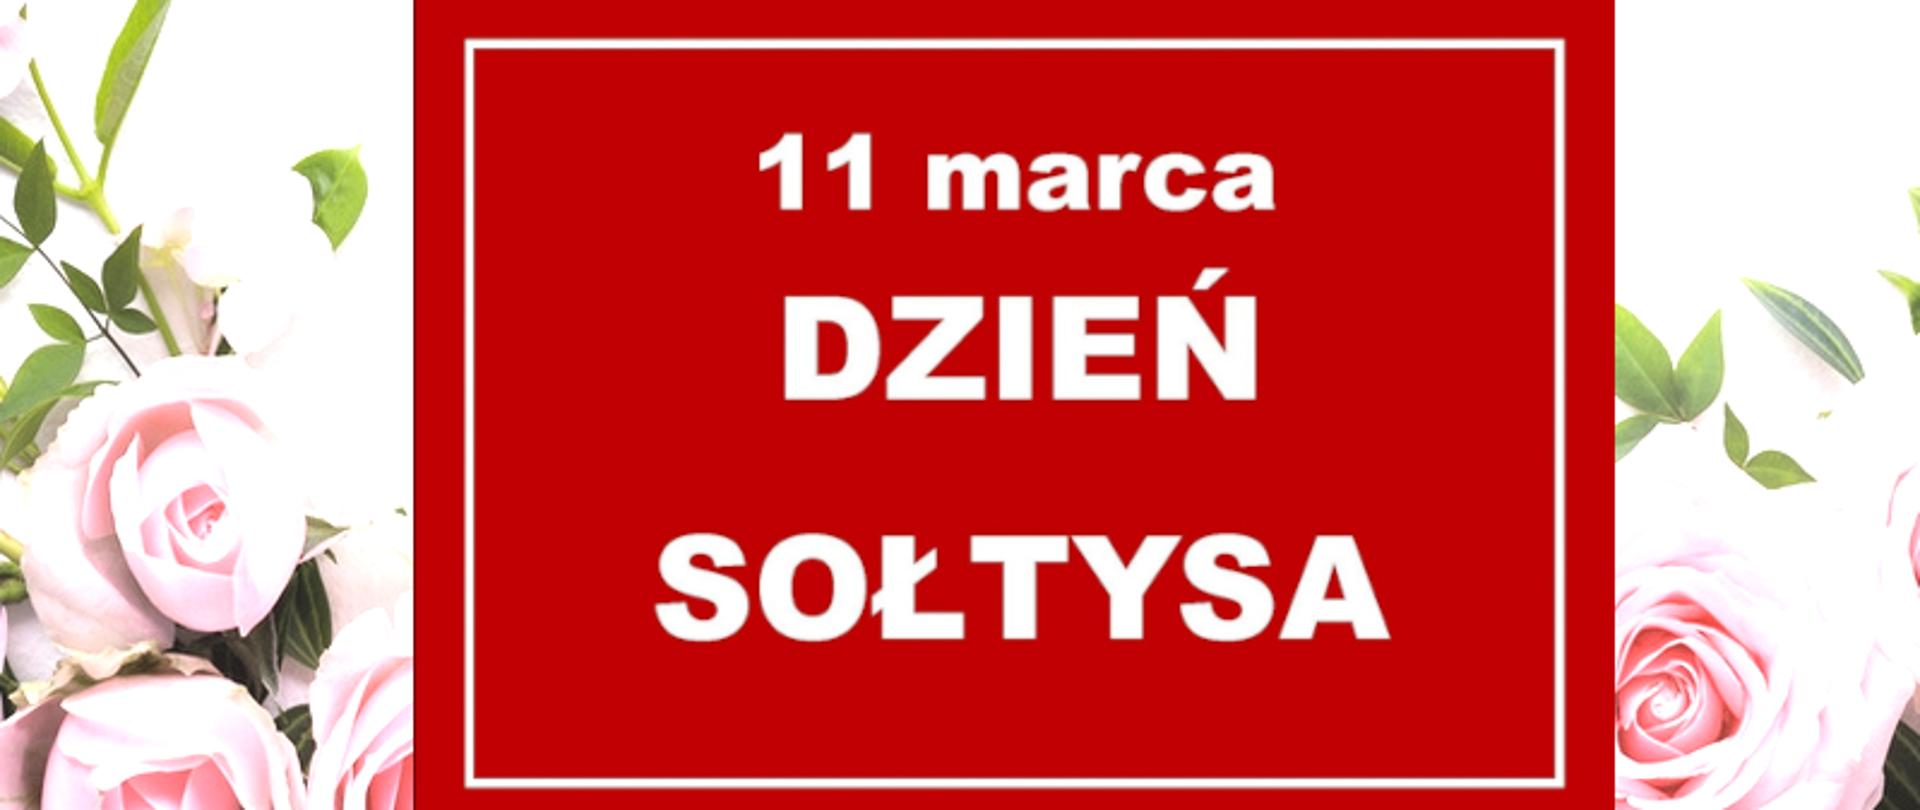 Czerwona tablica z napisem 11 marca Dzień Sołtysa na tle bukietu róż